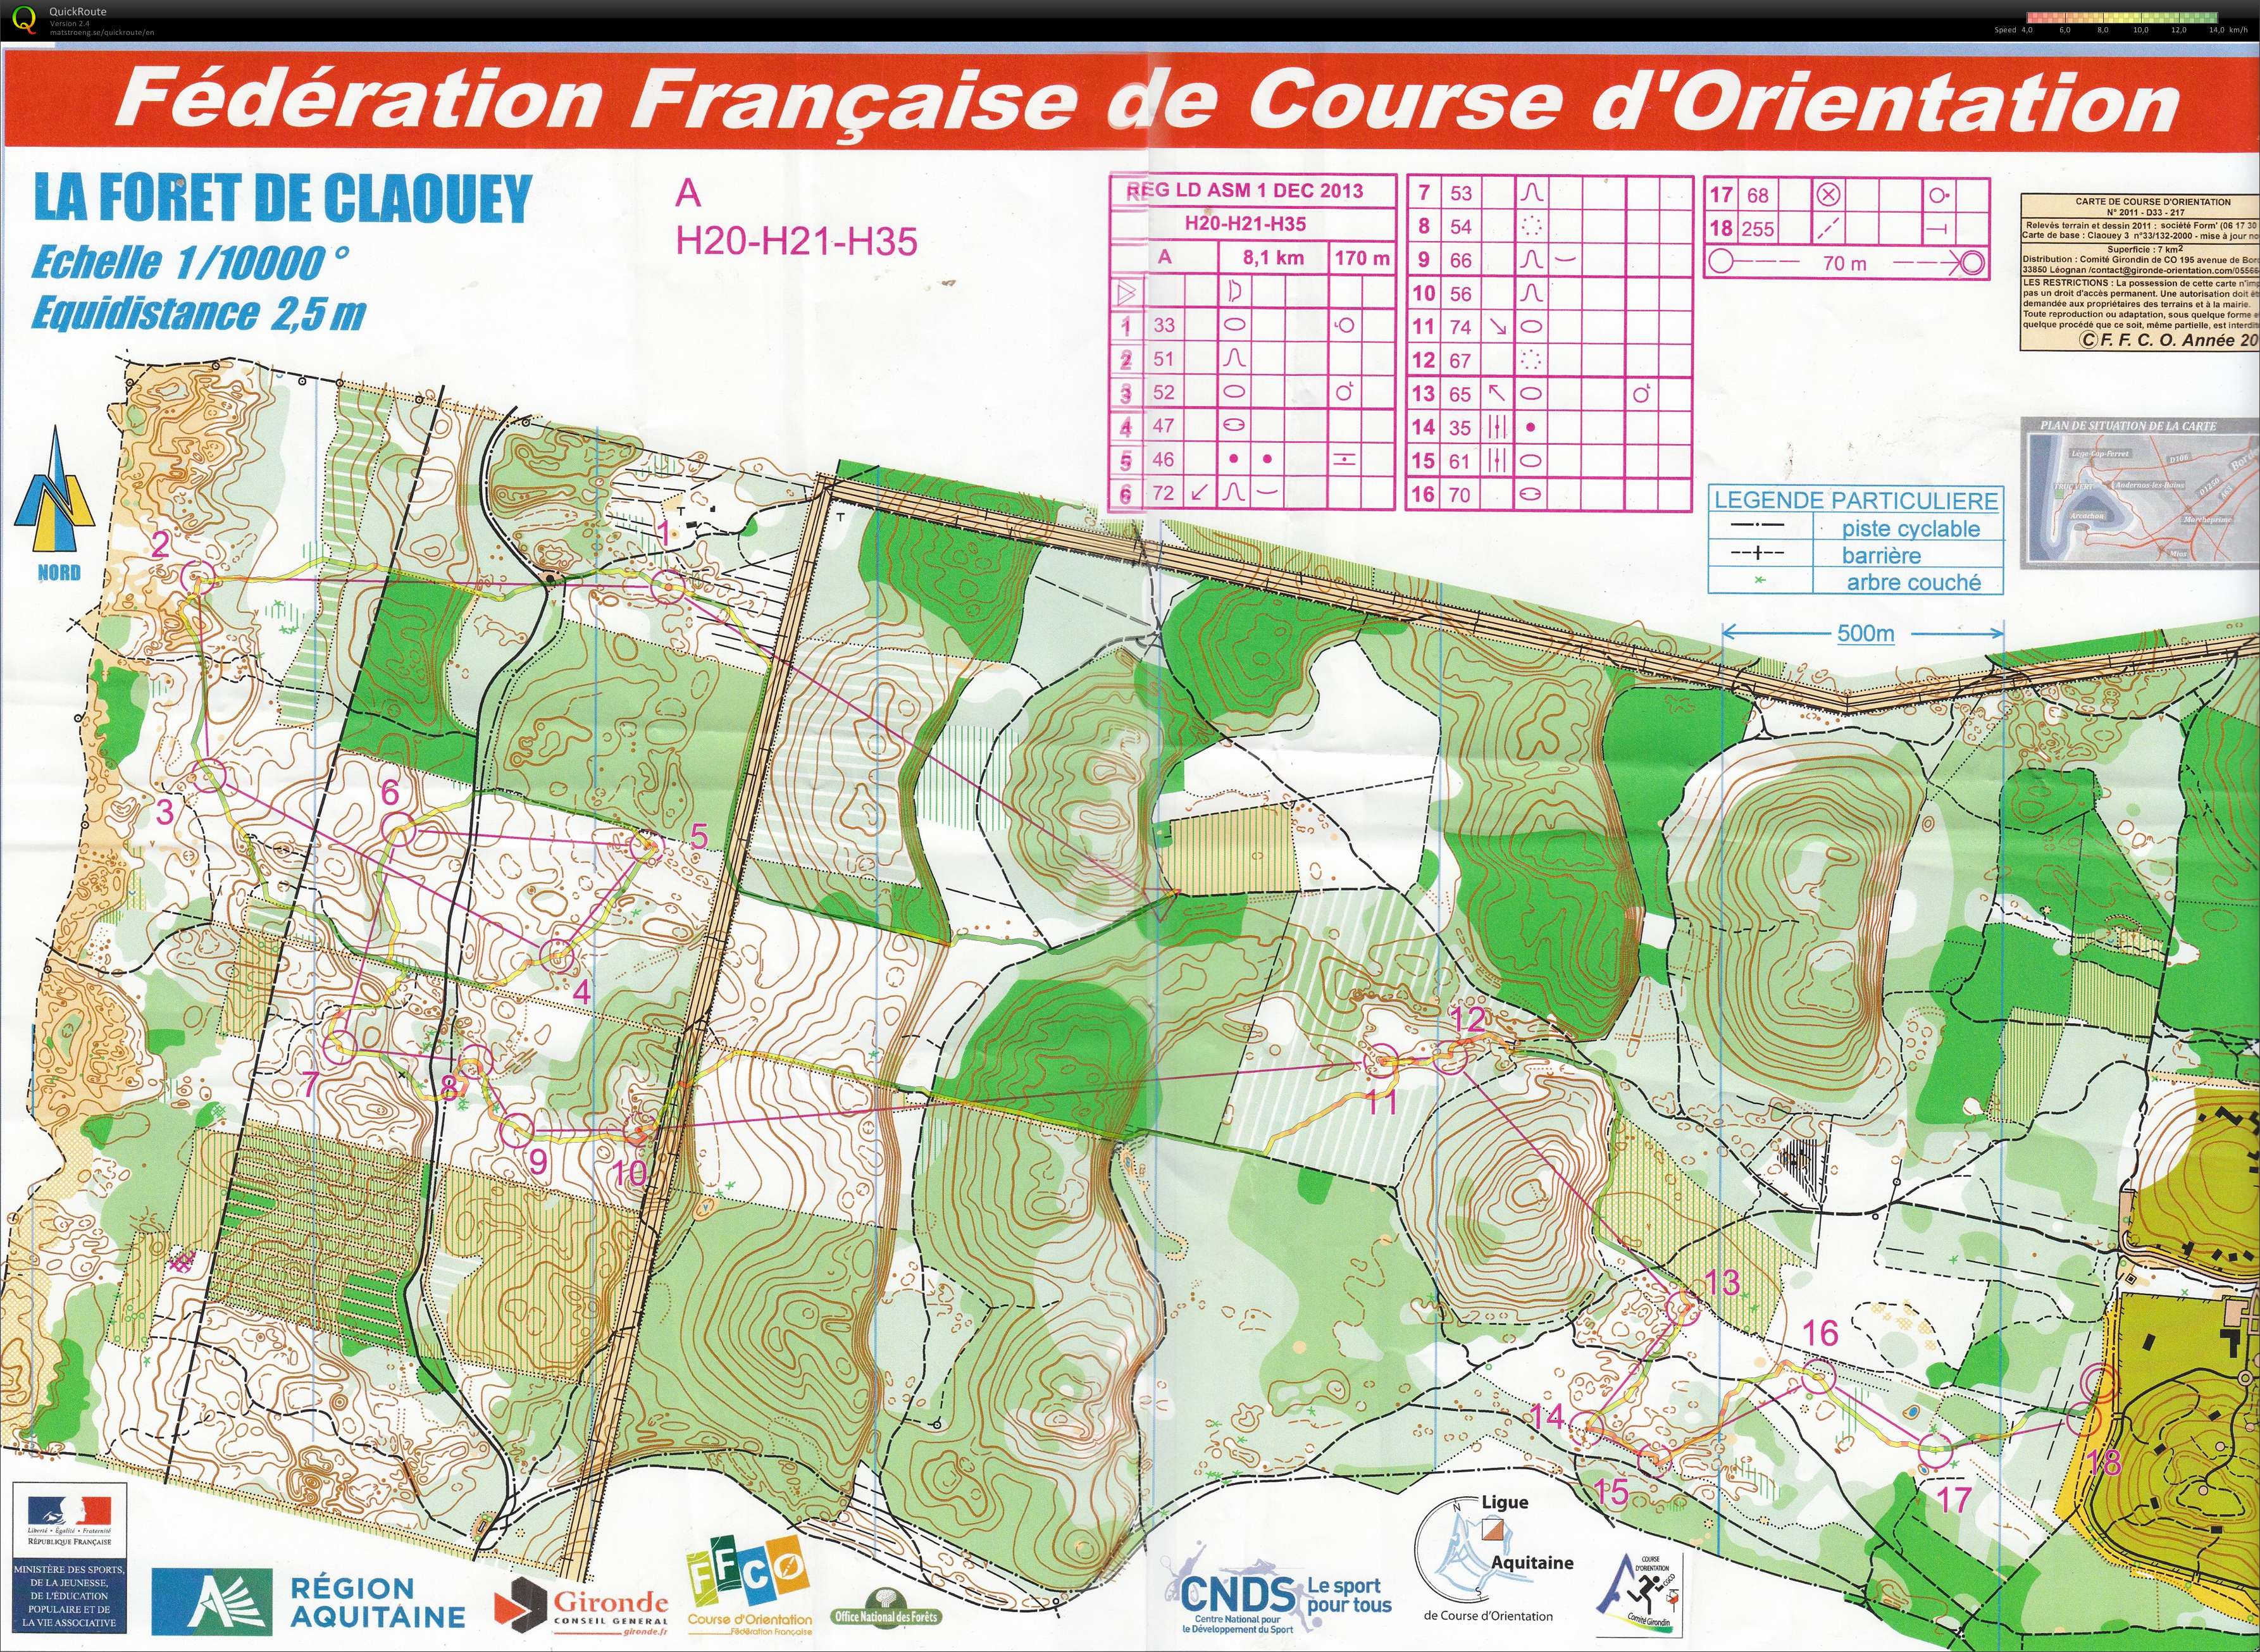 Régionale LD Aquitaine (01-12-2013)